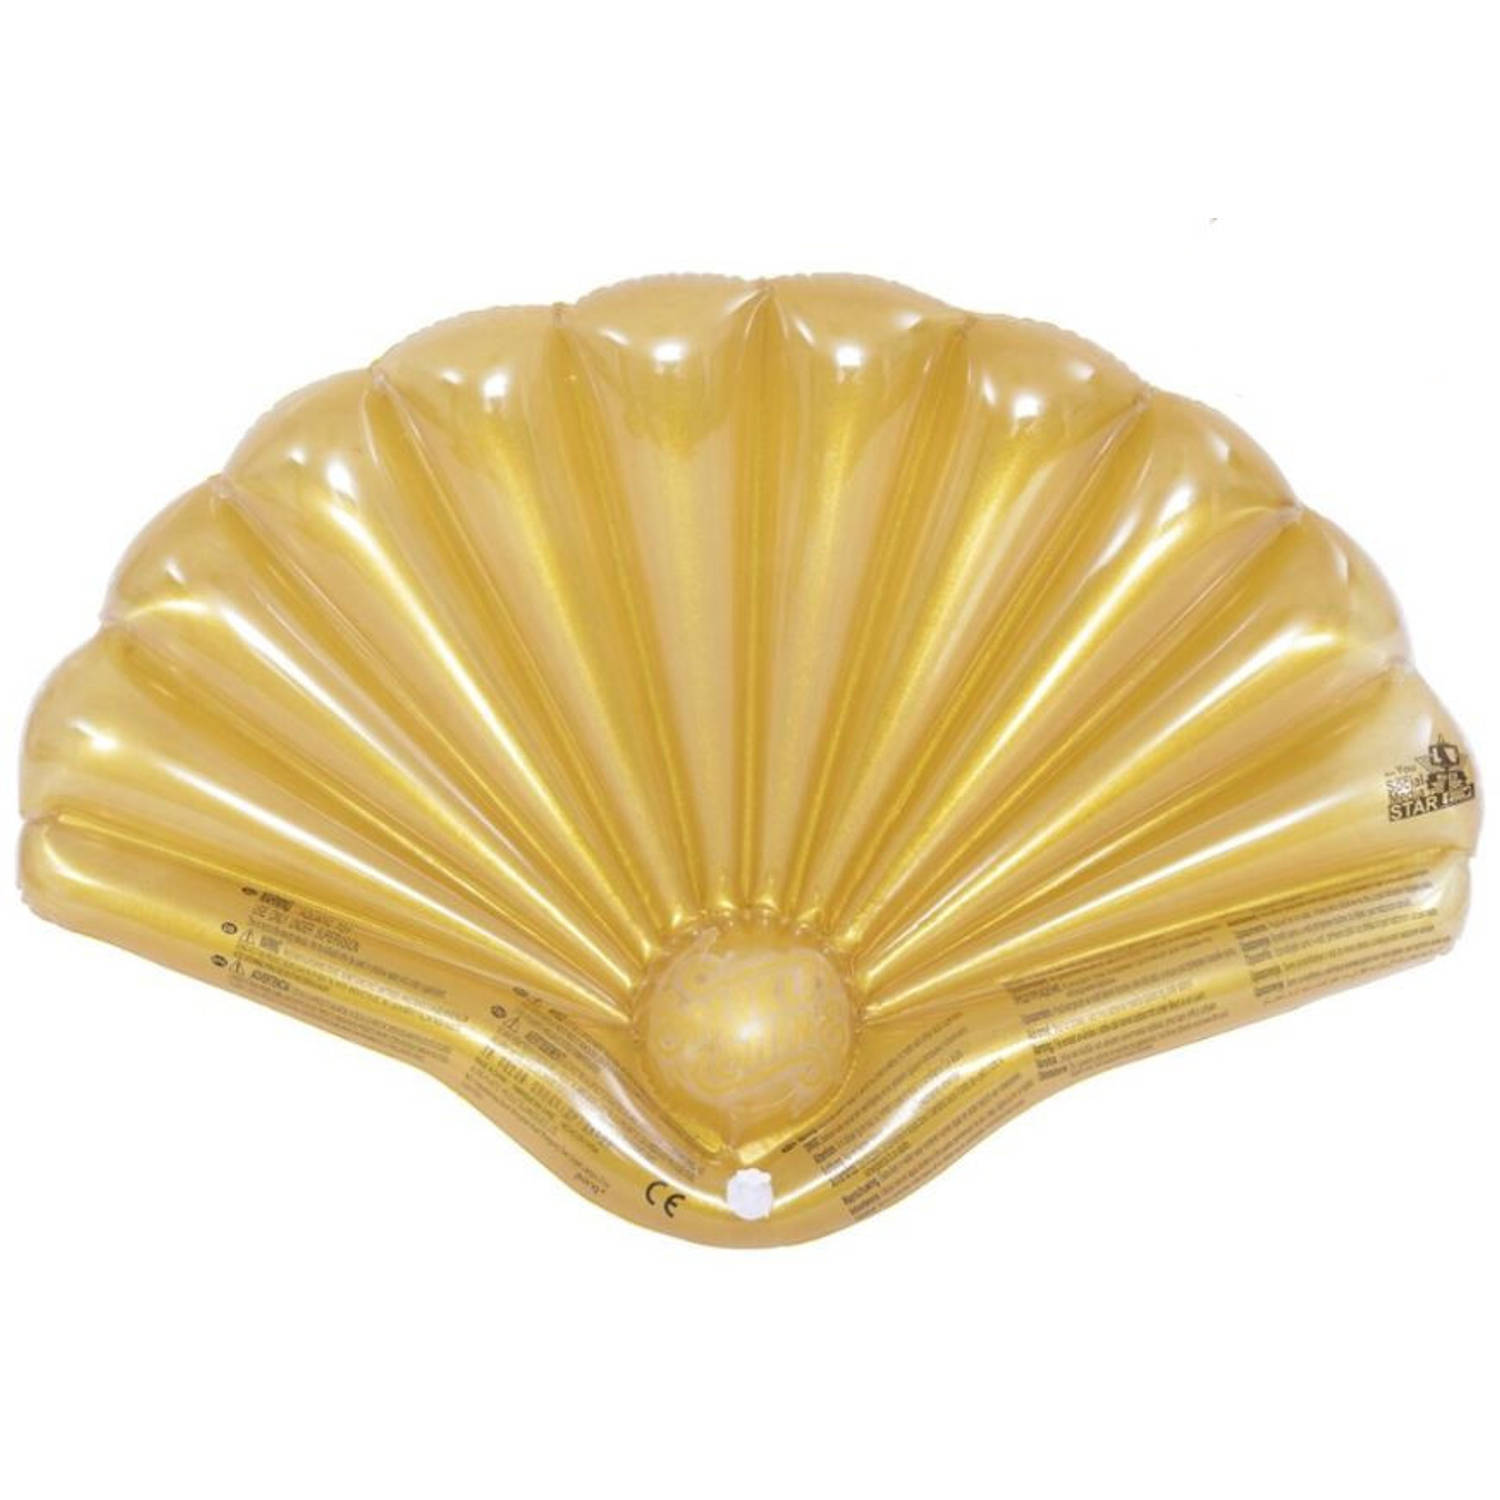 Gerimport luchtbed schelp 108 x 70 cm polyester goud